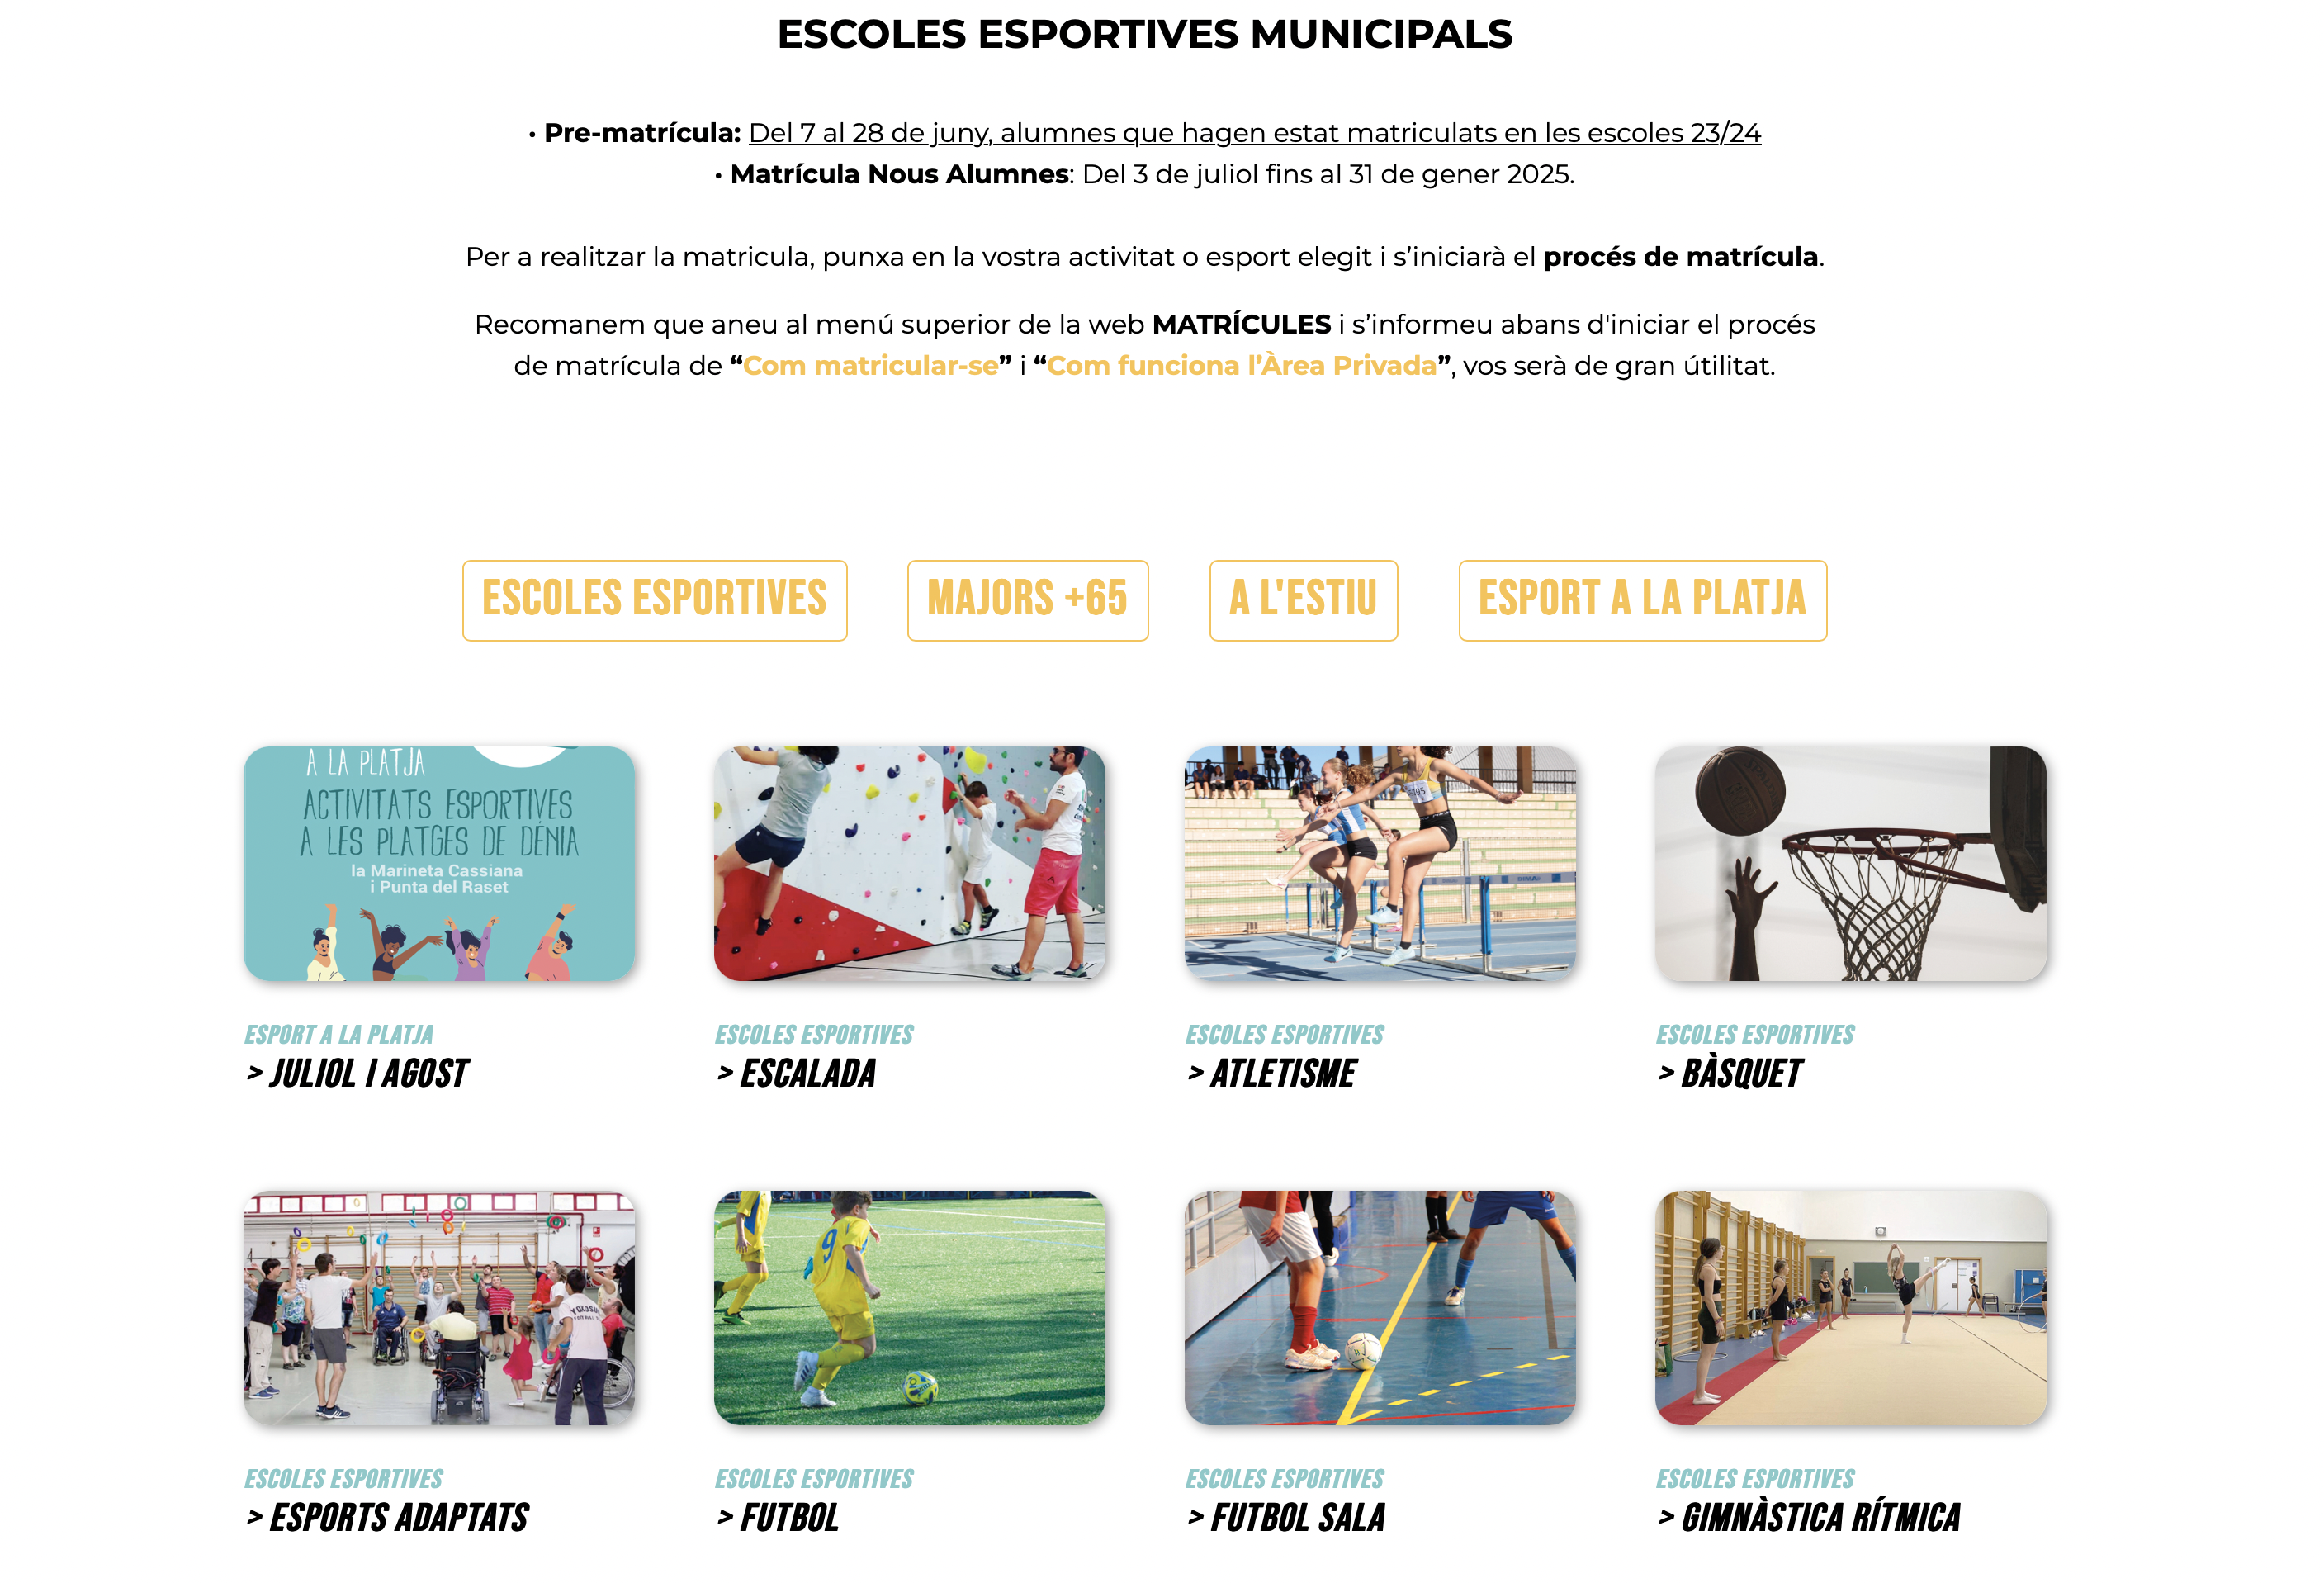 La nueva web de la Concejalía de Deportes facilita los trámites de matriculación en las escu...